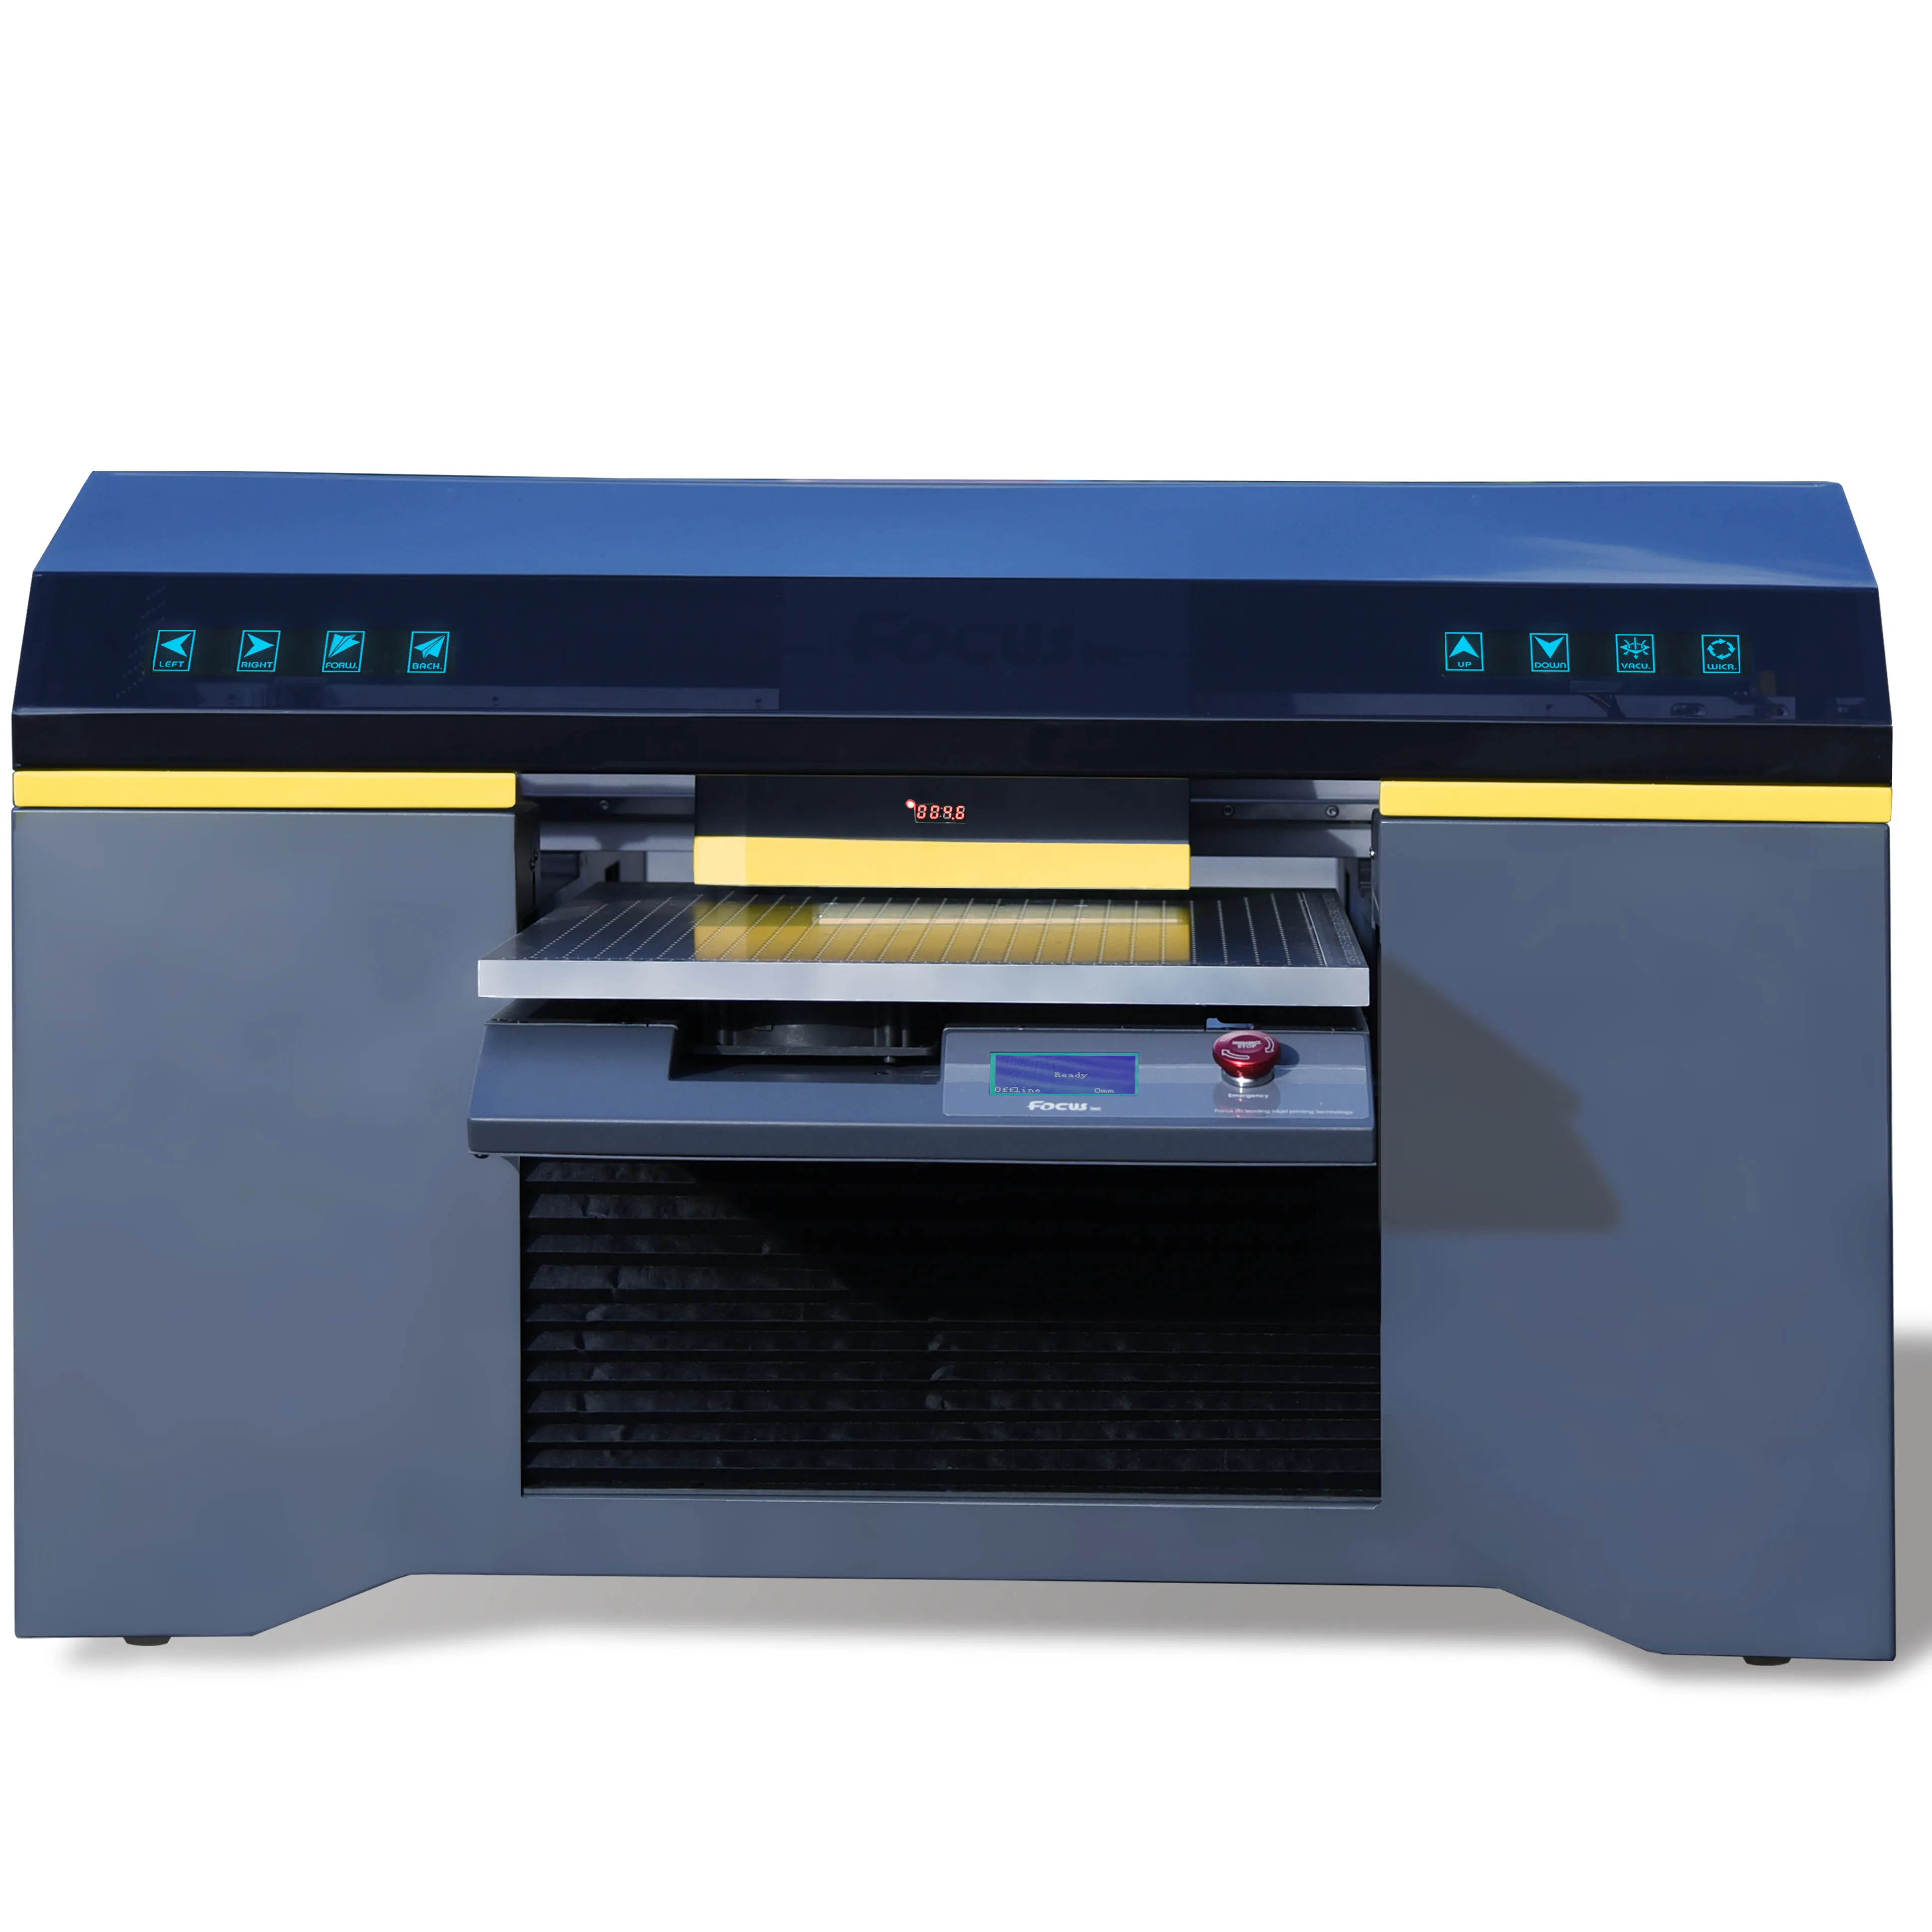 2021 a2 UV-Drucker Fabrik preis 6040 Digital Desktop UV-Flach bett drucker UV-Tinten drucker